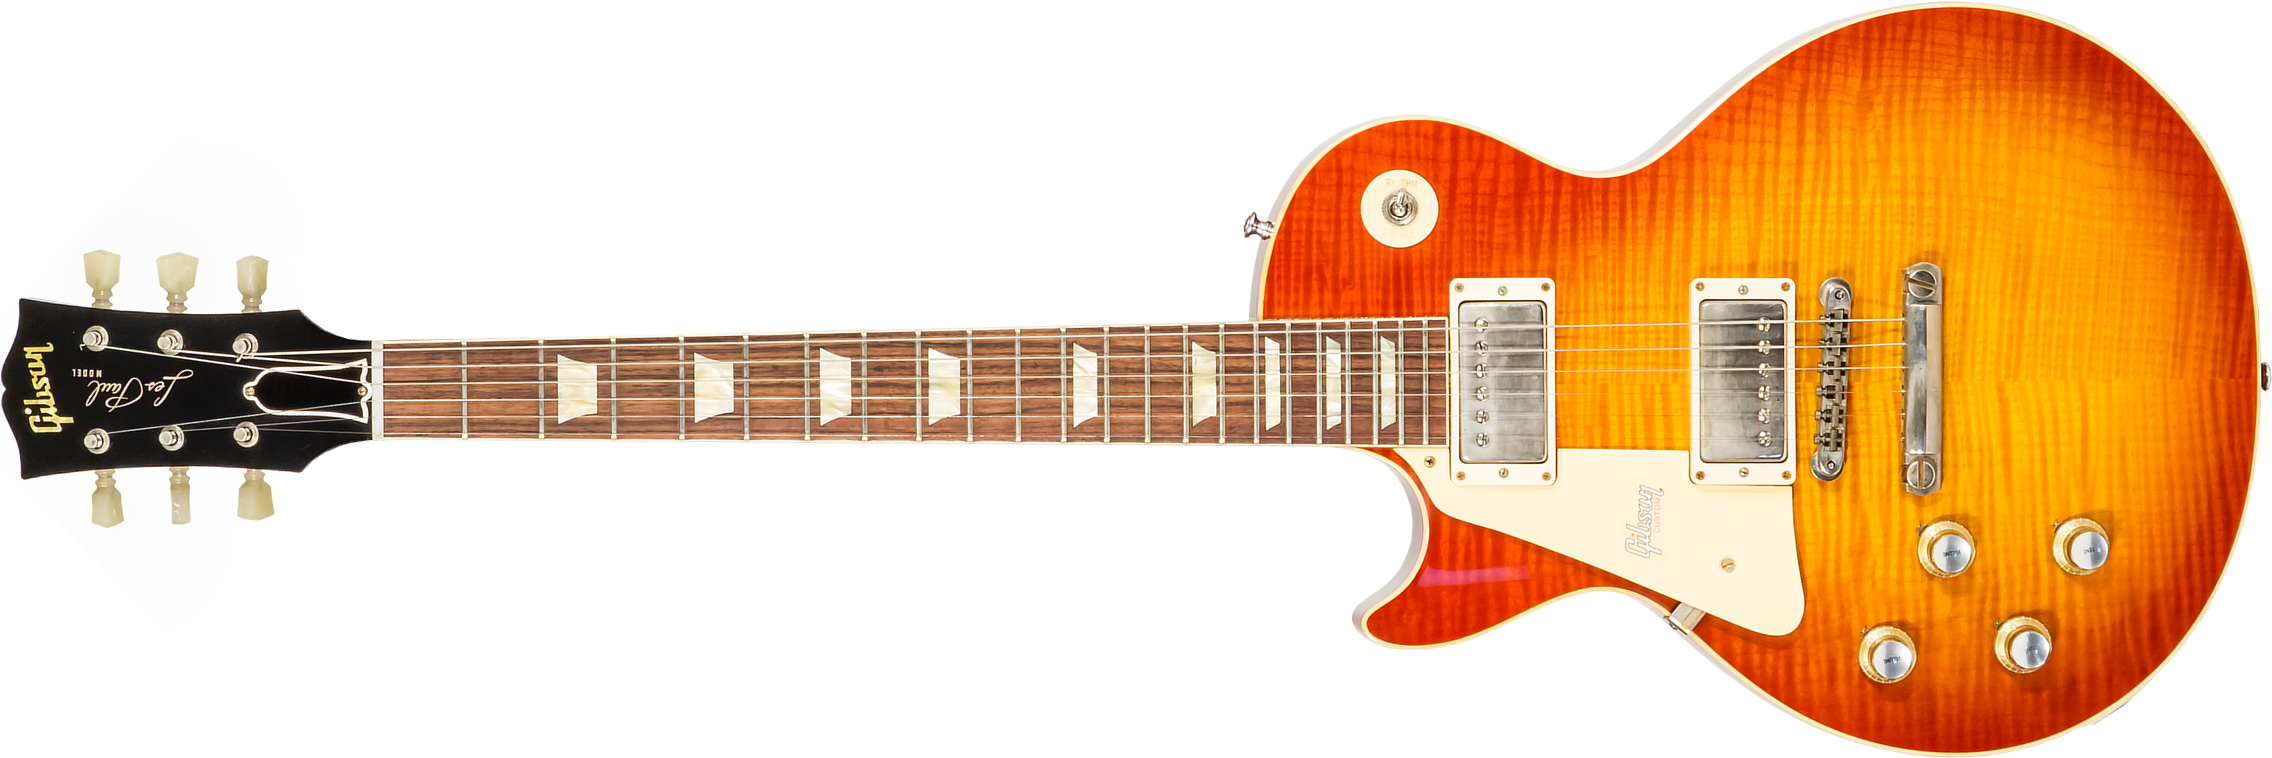 Gibson Custom Shop Les Paul Standard 1960 Reissue Lh Gaucher 2h Ht Rw #09122 - Vos Tangerine Burst - Guitare Électrique Gaucher - Main picture